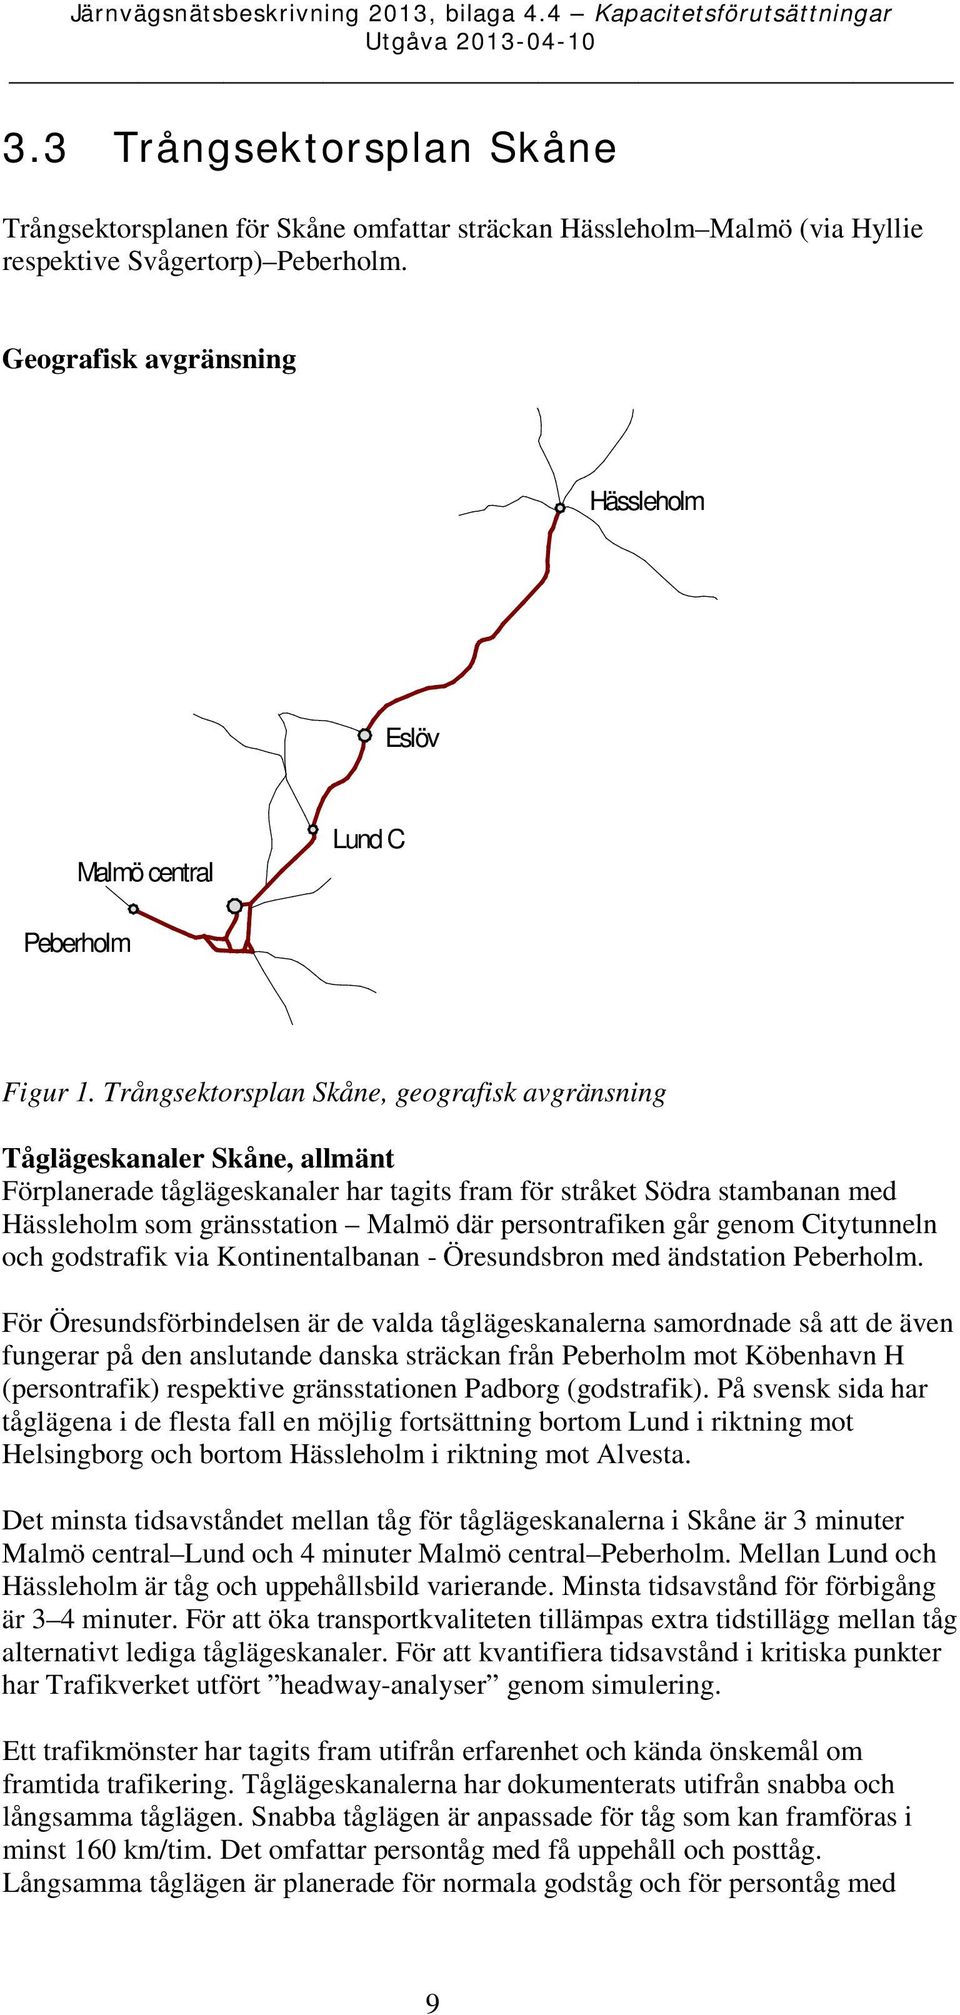 Trångsektorsplan Skåne, geografisk avgränsning Tåglägeskanaler Skåne, allmänt Förplanerade tåglägeskanaler har tagits fram för stråket Södra stambanan med Hässleholm som gränsstation Malmö där